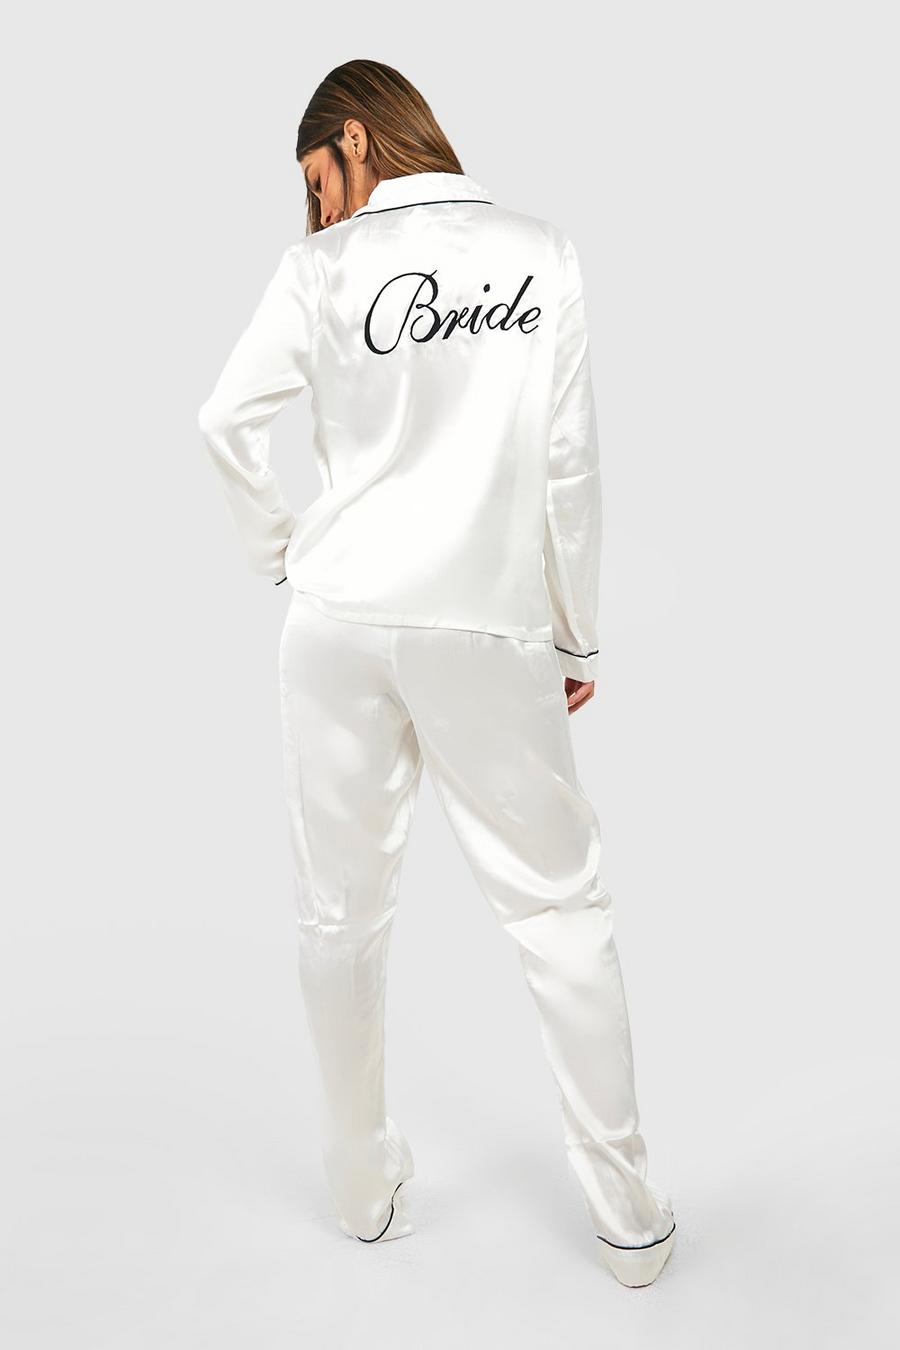 Satin Pyjama-Set mit Bride Stickerei, Elfenbeinfarben white image number 1